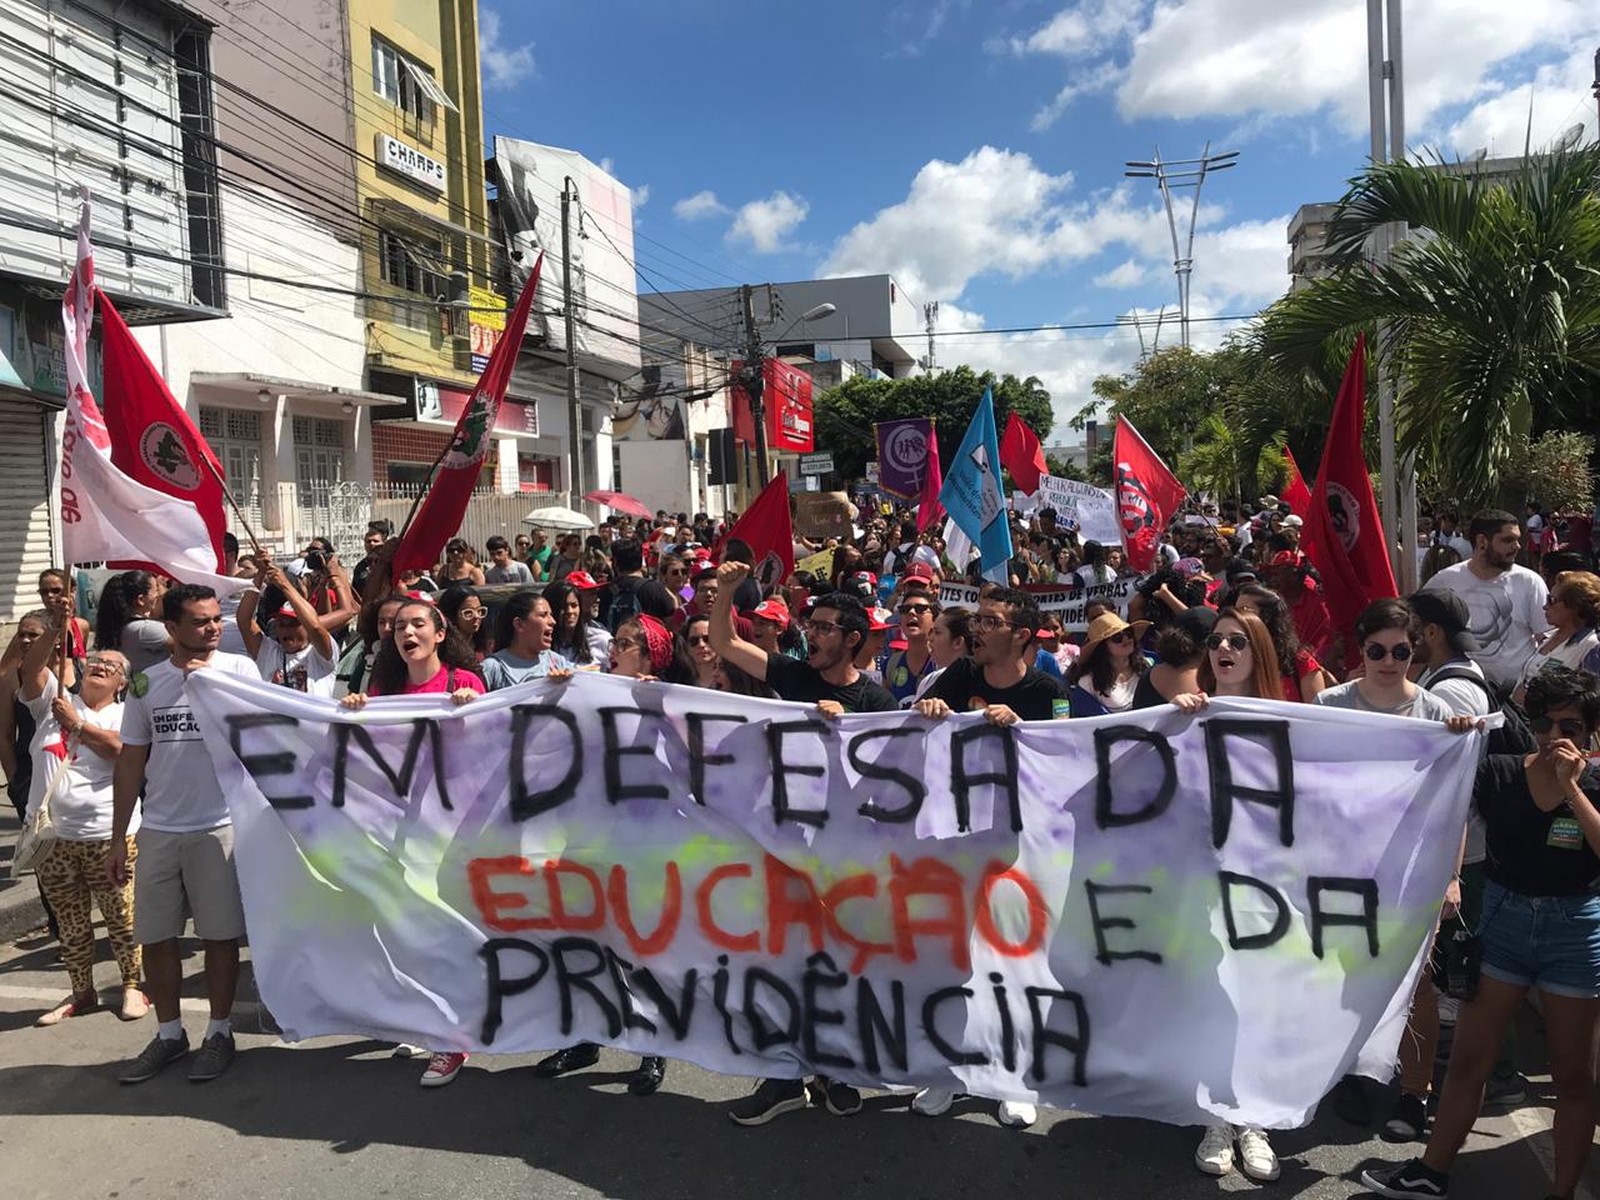  Protesto contra o bloqueio de verbas na educação e a reforma da Previdência em Caruaru — Foto: Anderson Melo/TV Asa Branca 